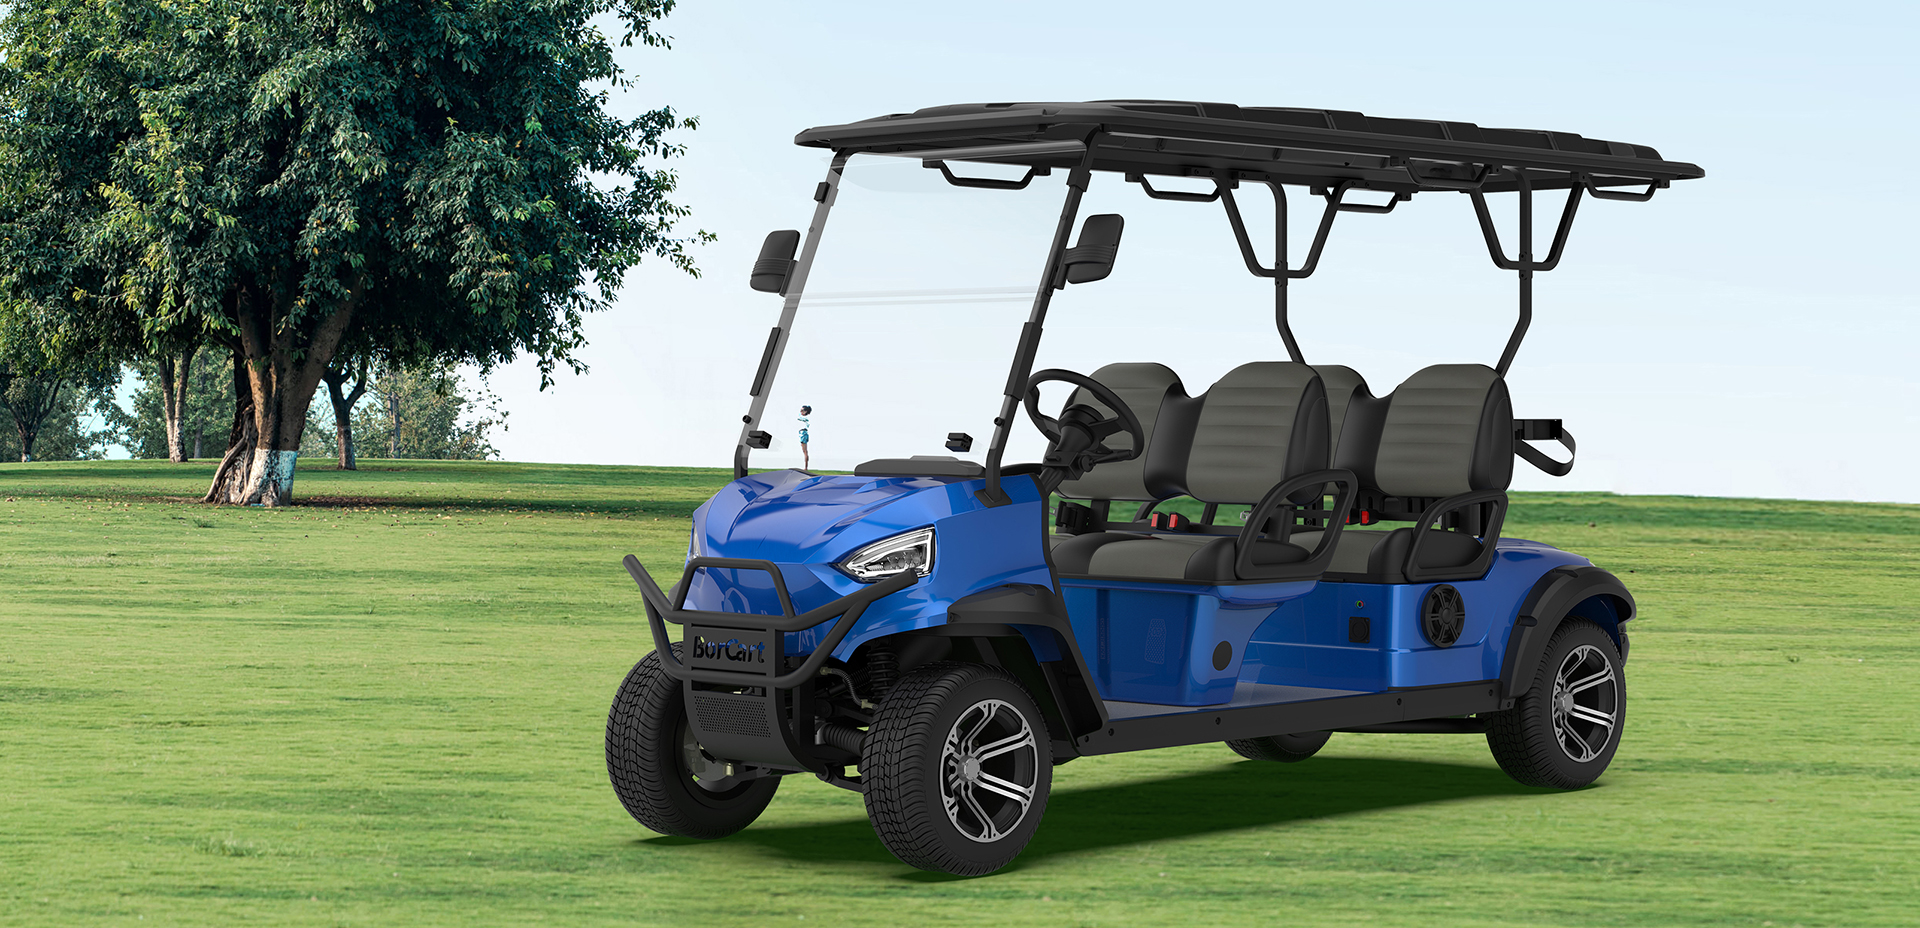 ES-C4 New Wheel Electric Club Car Golf Cart විකිණීමට ඇත